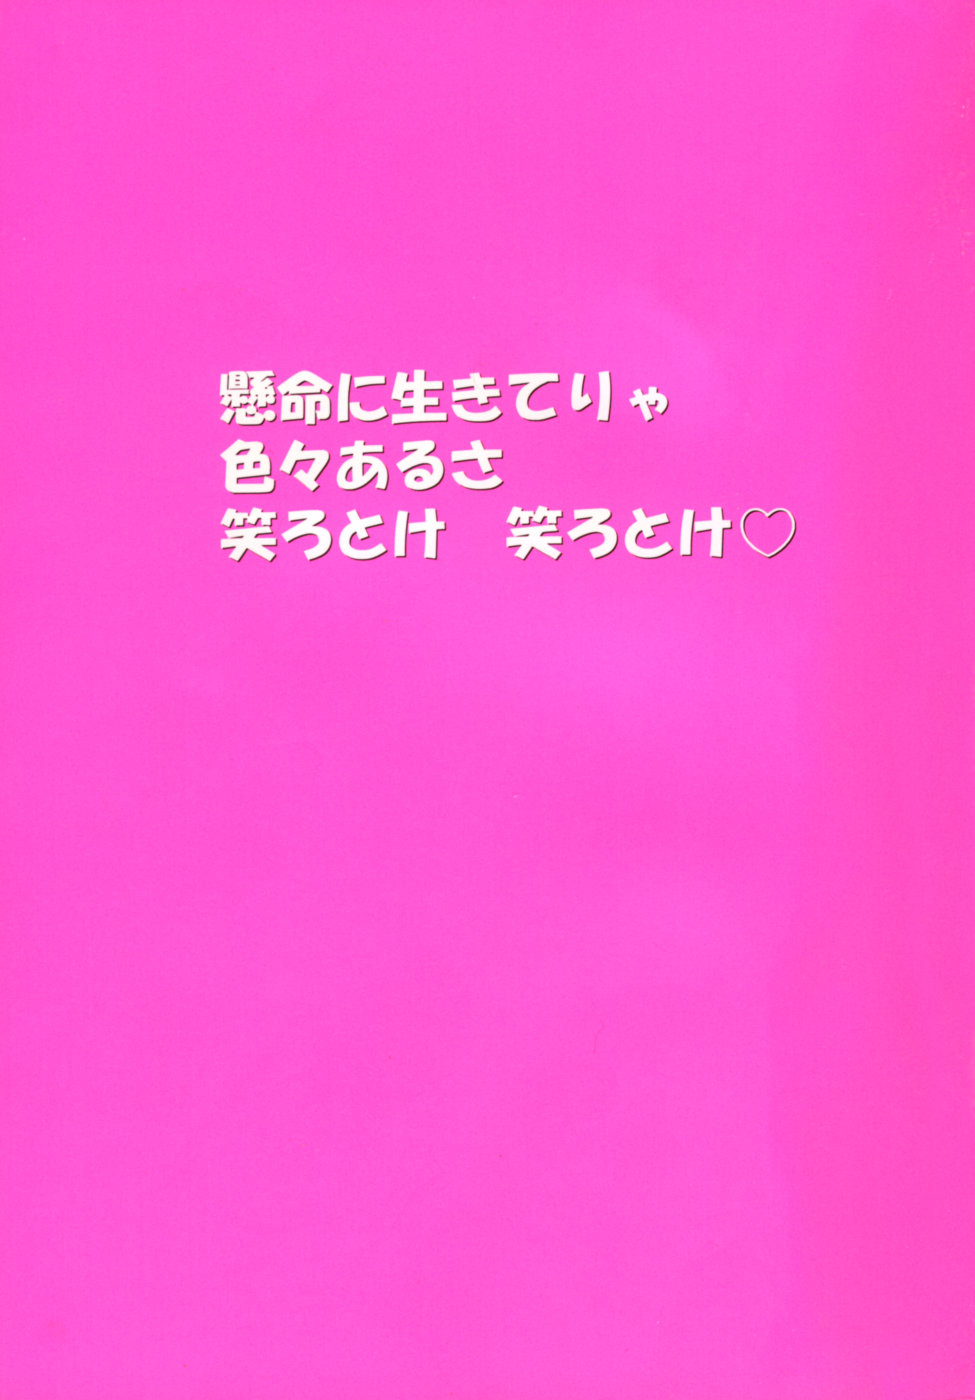 [Shiwasu no Okina] Shining Musume. 5. Five Sense of Love page 5 full